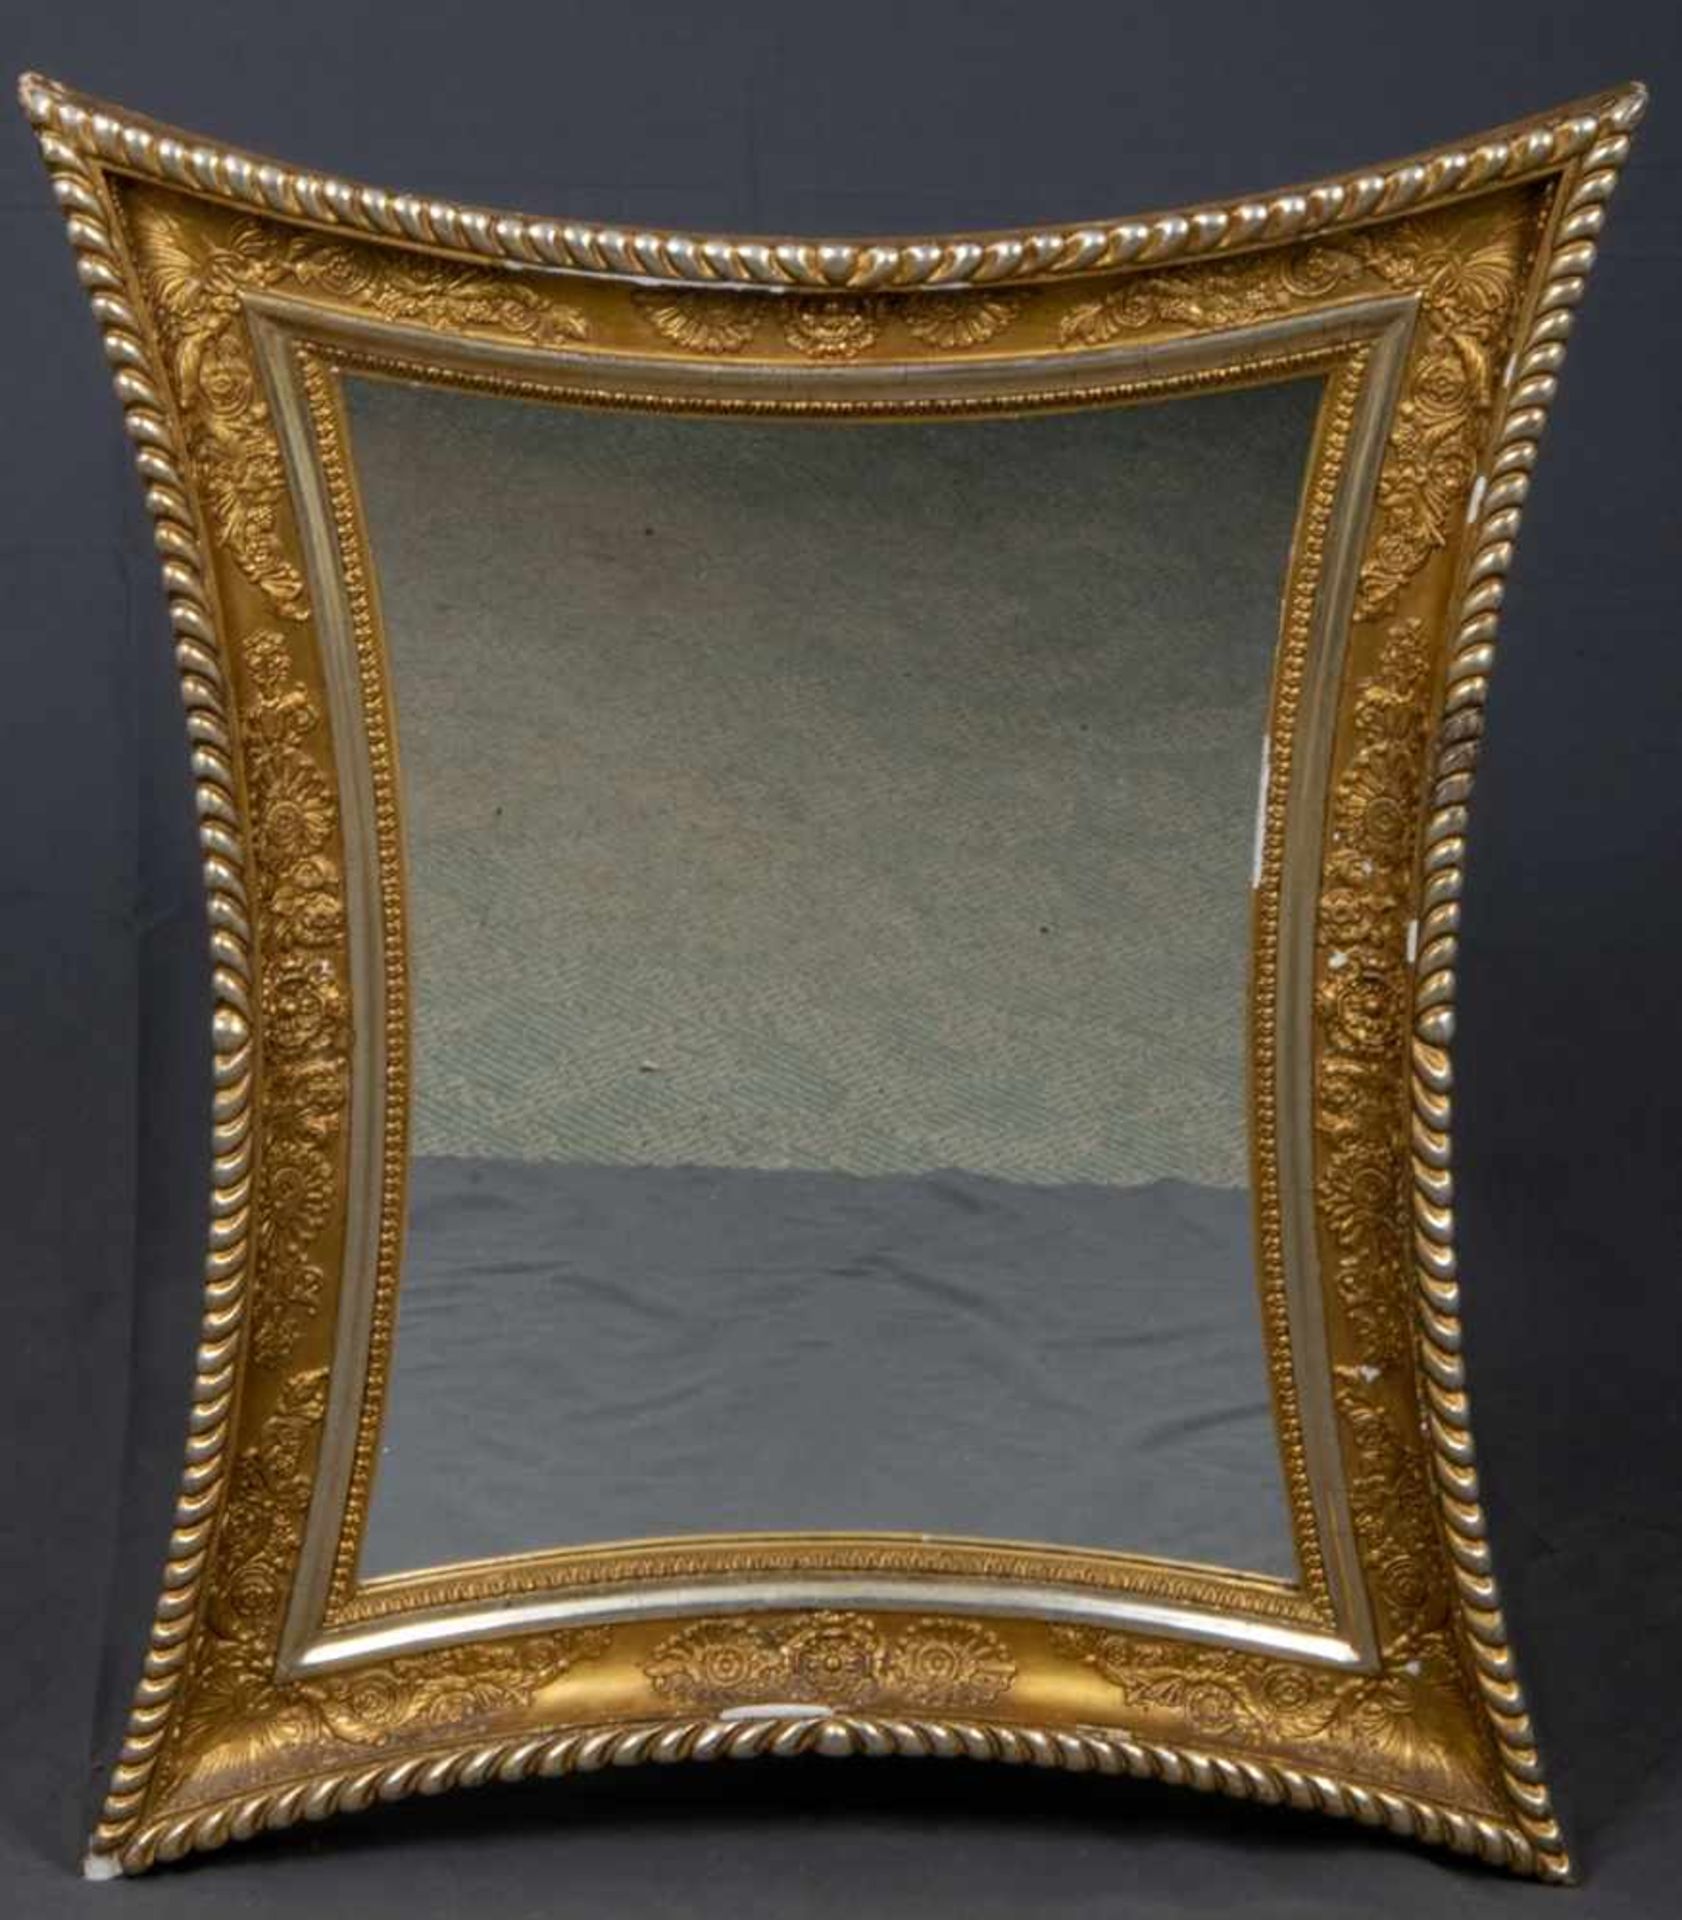 Äußerst eleganter Empirespiegel um 1800/20. Allseitig konkav geschwungener Rahmen mit